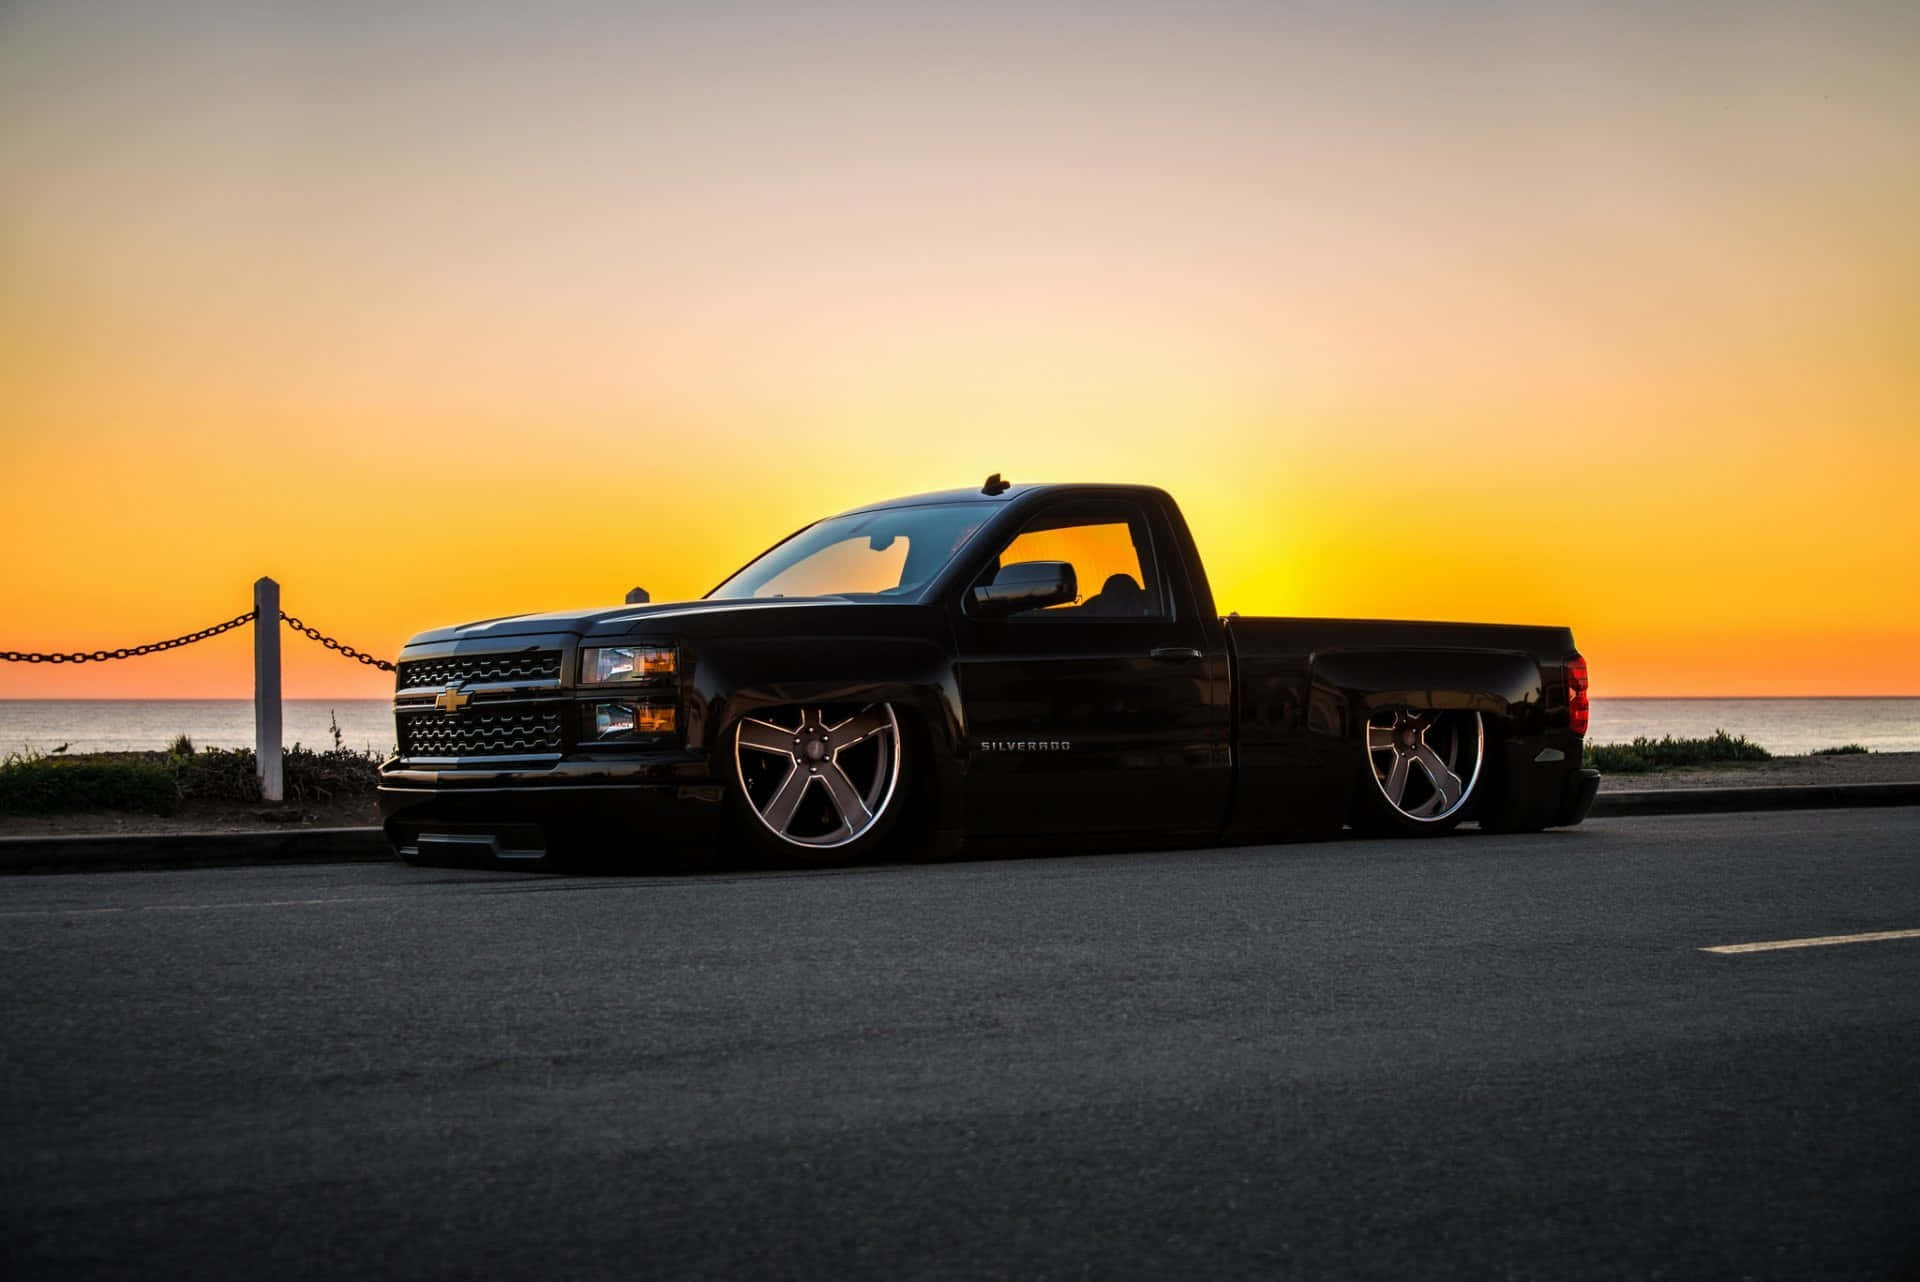 Pickuptruck 2014 Chevrolet Silverado 1500 Sonnenuntergang Fotografie Wallpaper